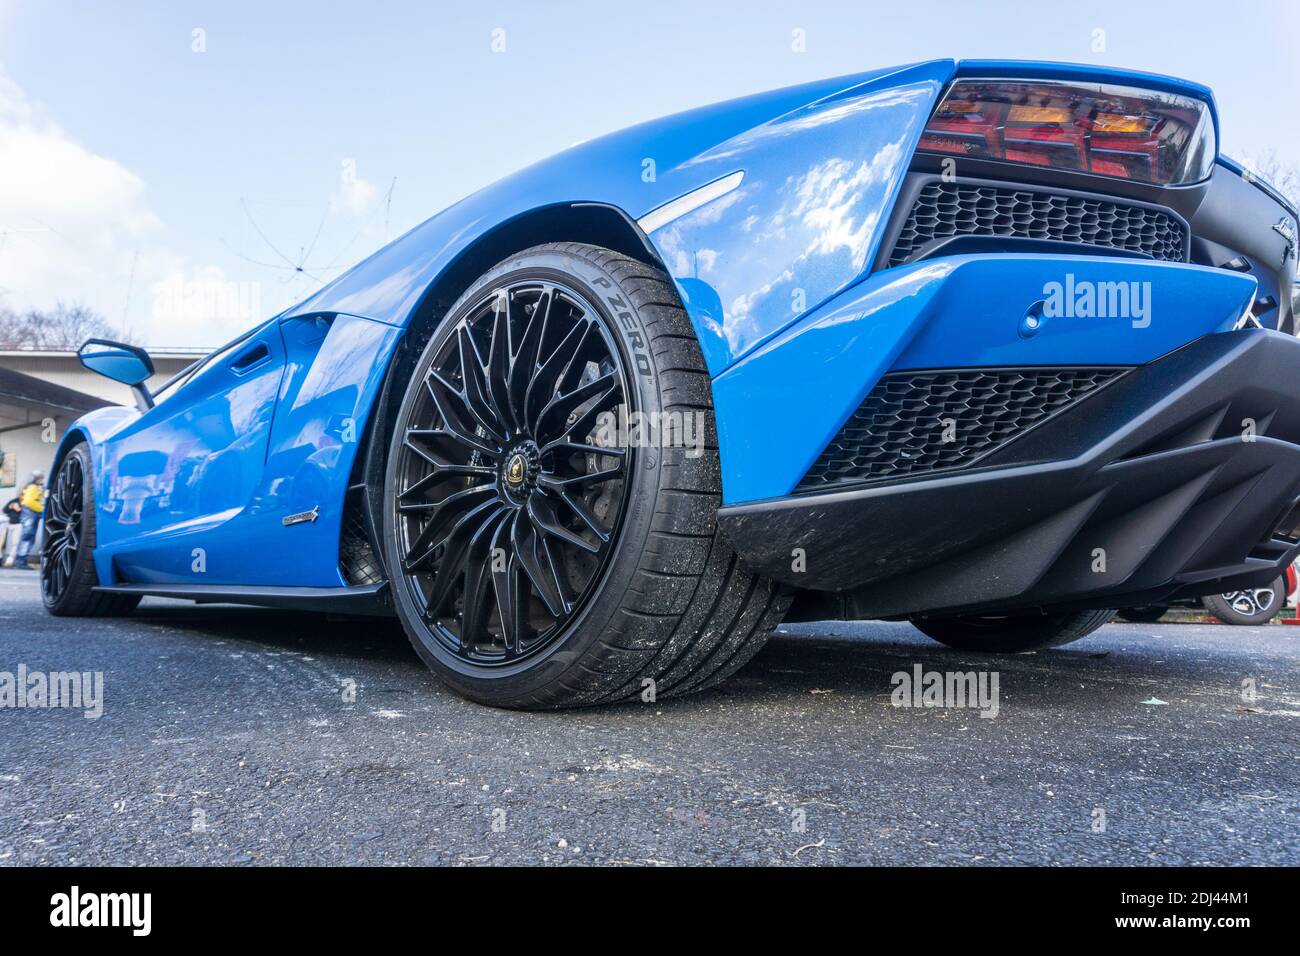 Ruota posteriore Dianthus di una lamborghini lamborghini lp740-4 blu le mans Aventador S con ruota, arco e lato posteriore Foto Stock